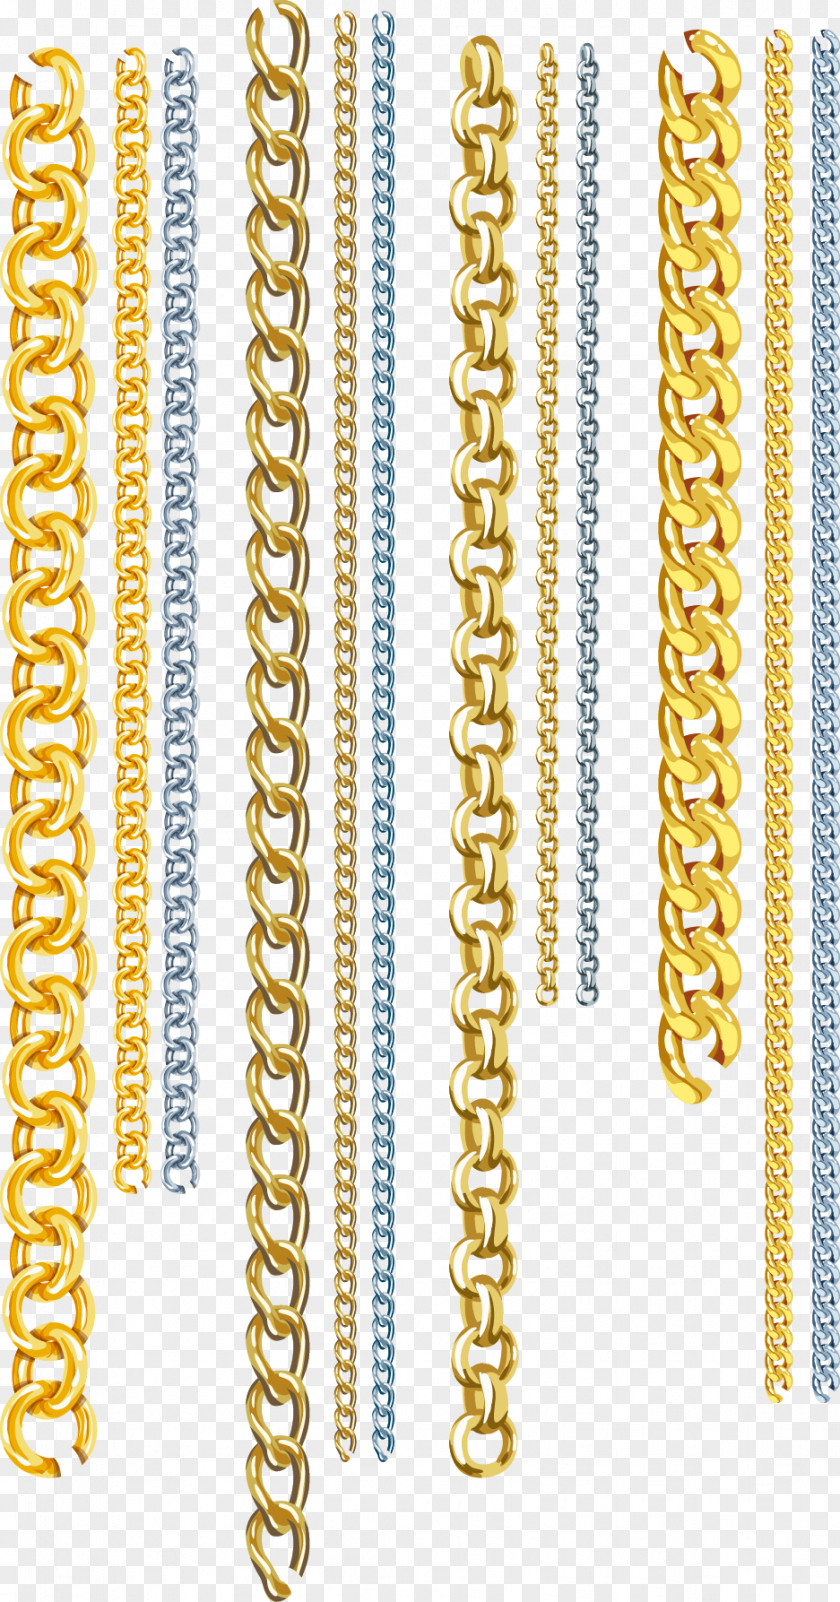 Vector Chains Gold Euclidean Chain PNG